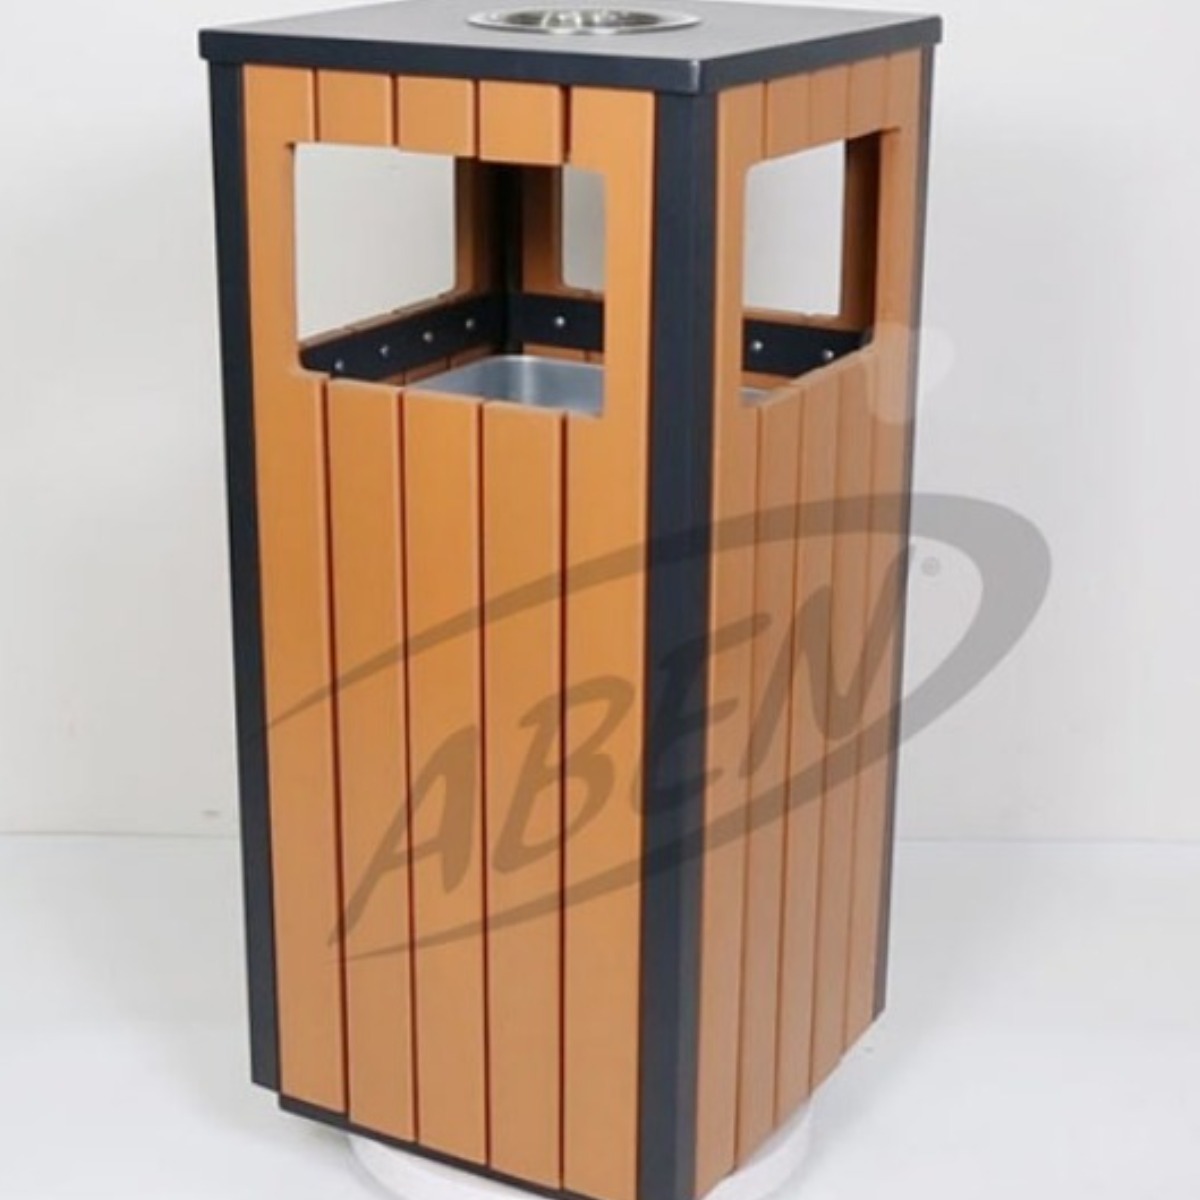 AB-514 Wood Open Space Trash Can adlı ürünün logosu